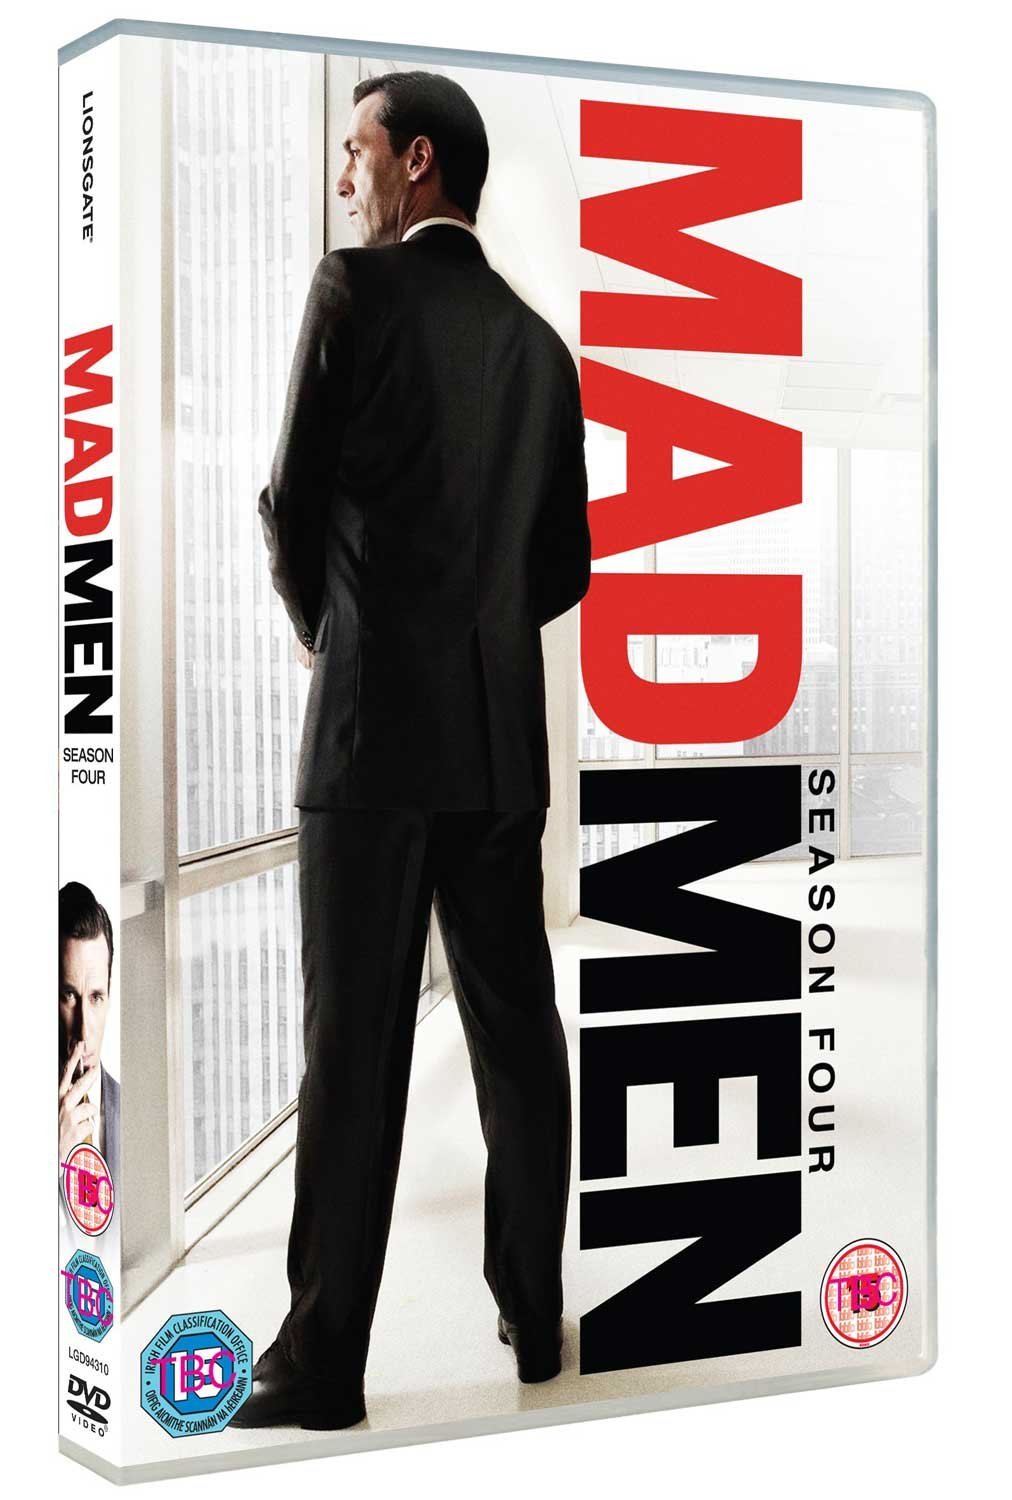 Mad Men - Season 4 (DVD)